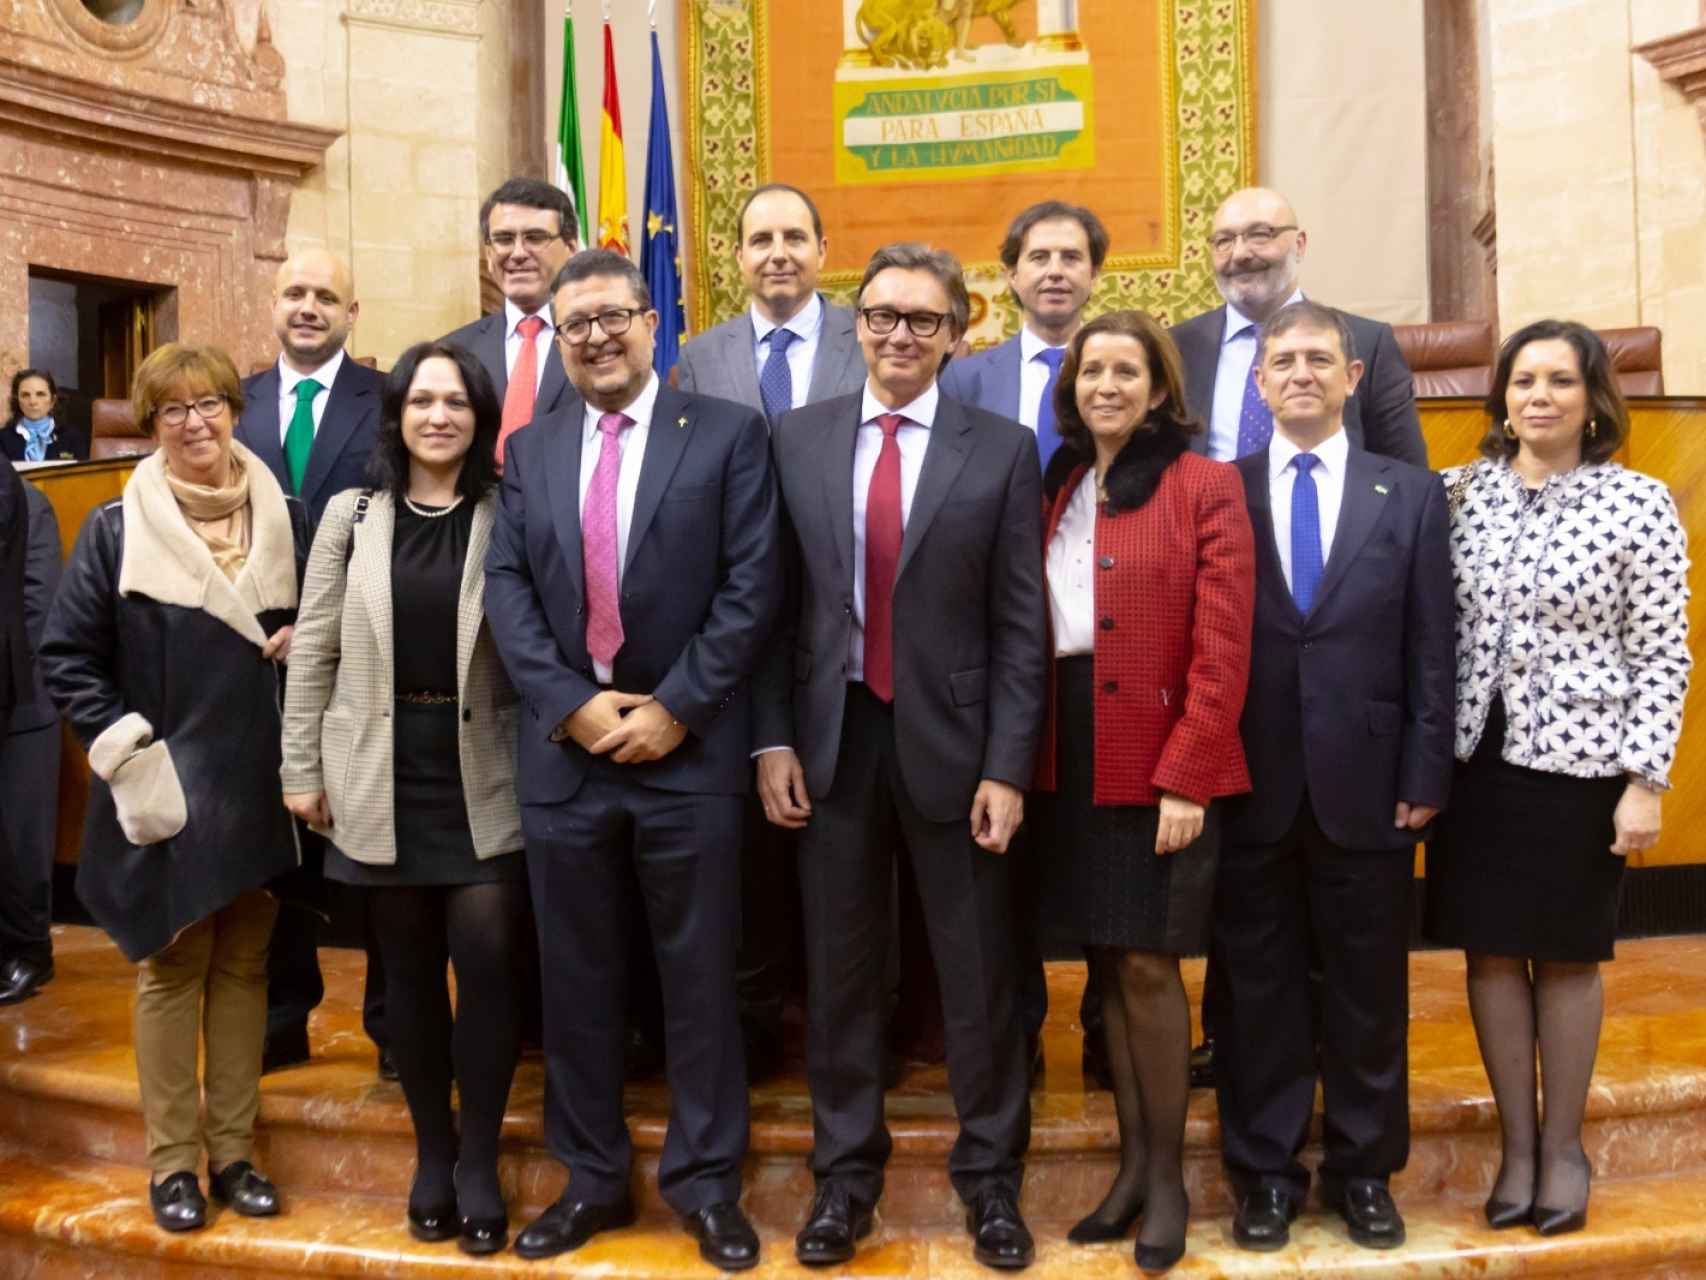 Los 12 diputados de Vox posan en su primer día en el Parlamento andaluz.